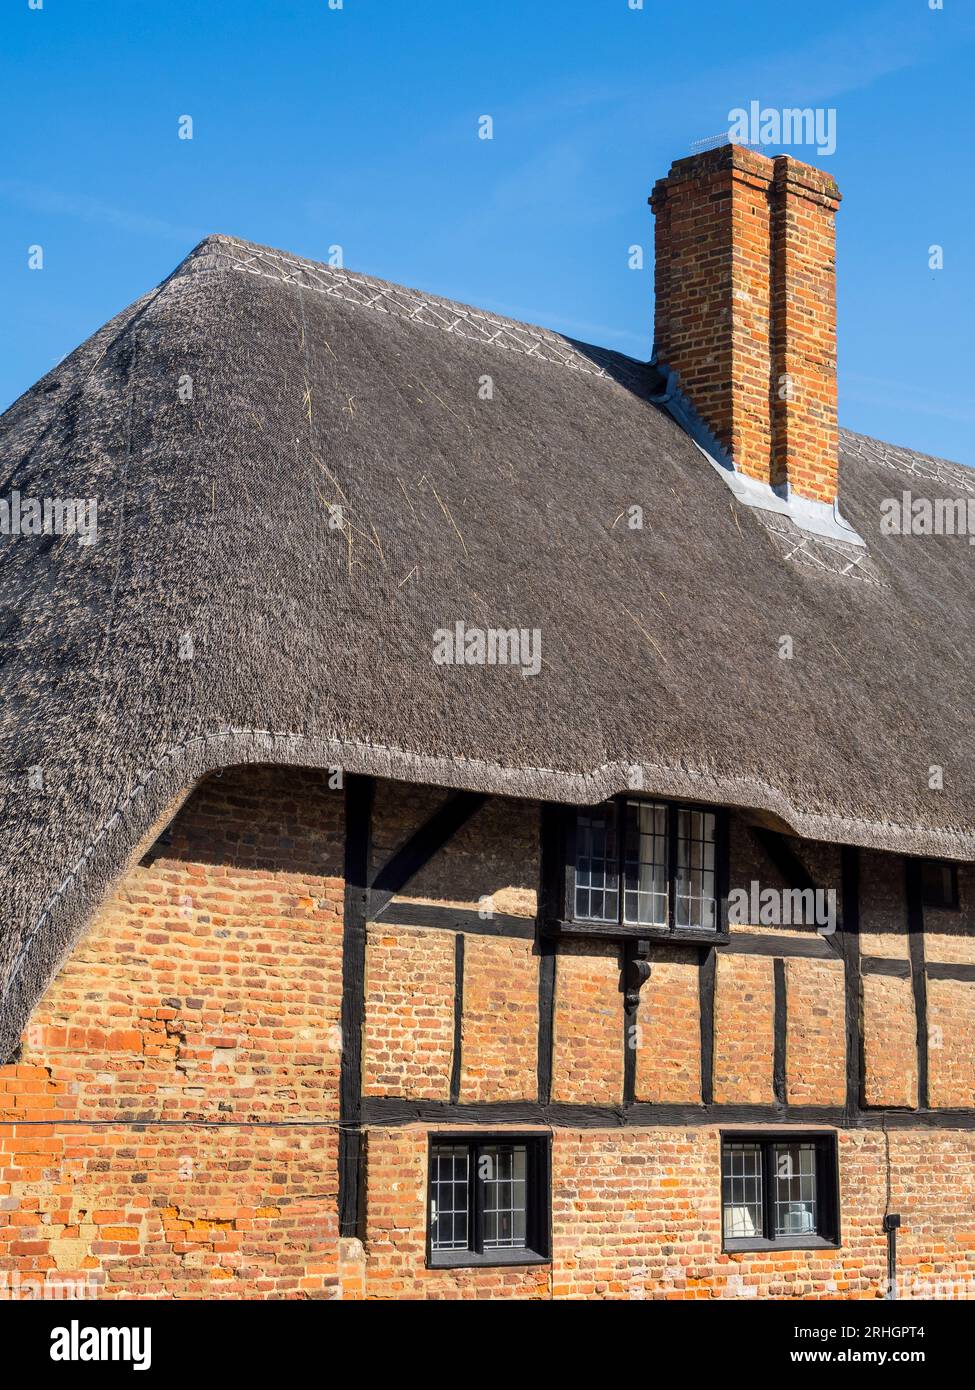 Chaume, Cottage, bâtiment Tudor, avec structure en bois exposée, la rue, ancienne base, Basingstoke, Hampshire, Angleterre, Royaume-Uni, GB. Banque D'Images